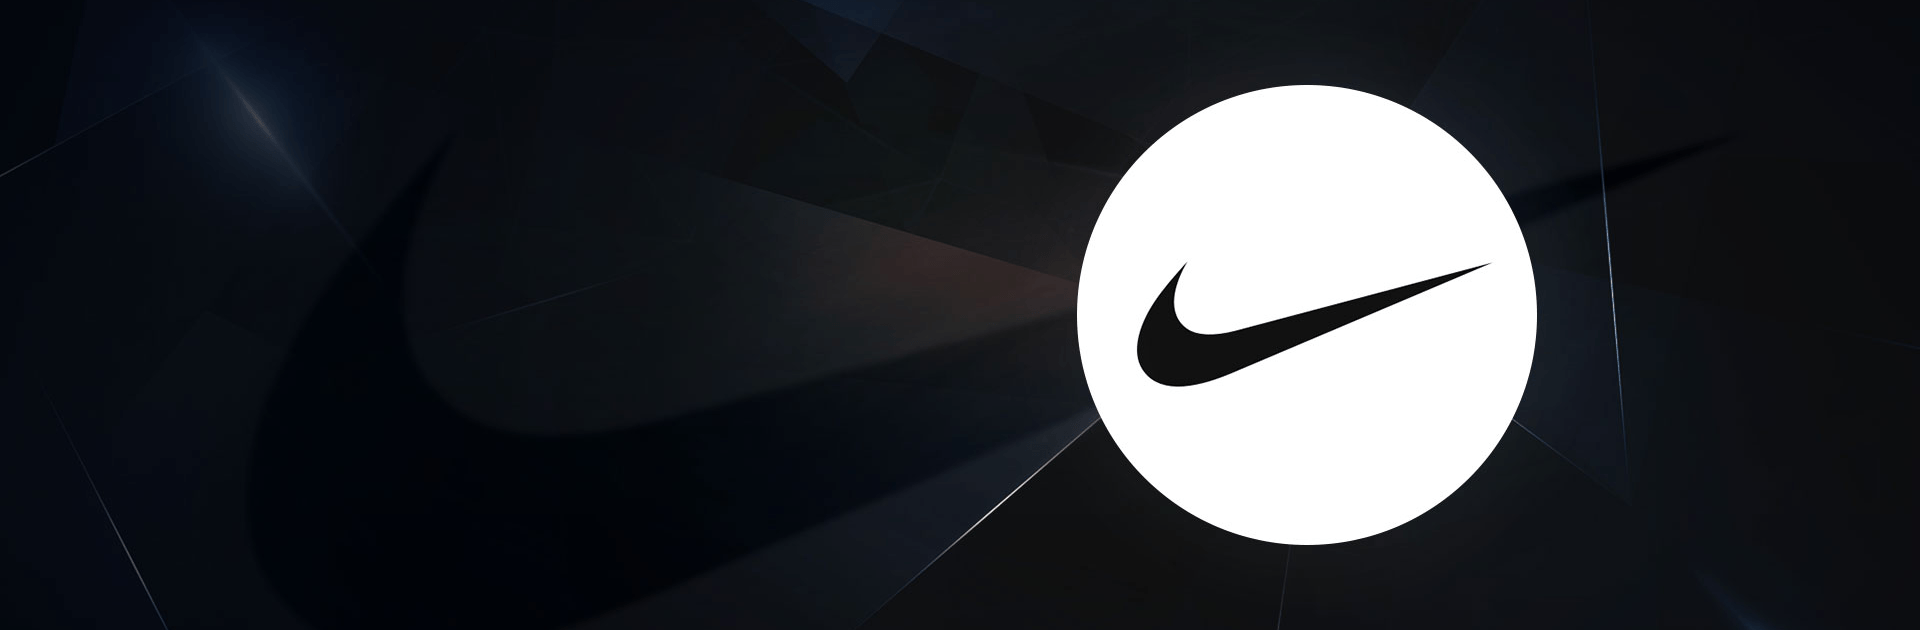 Nike - Shopping sport et mode